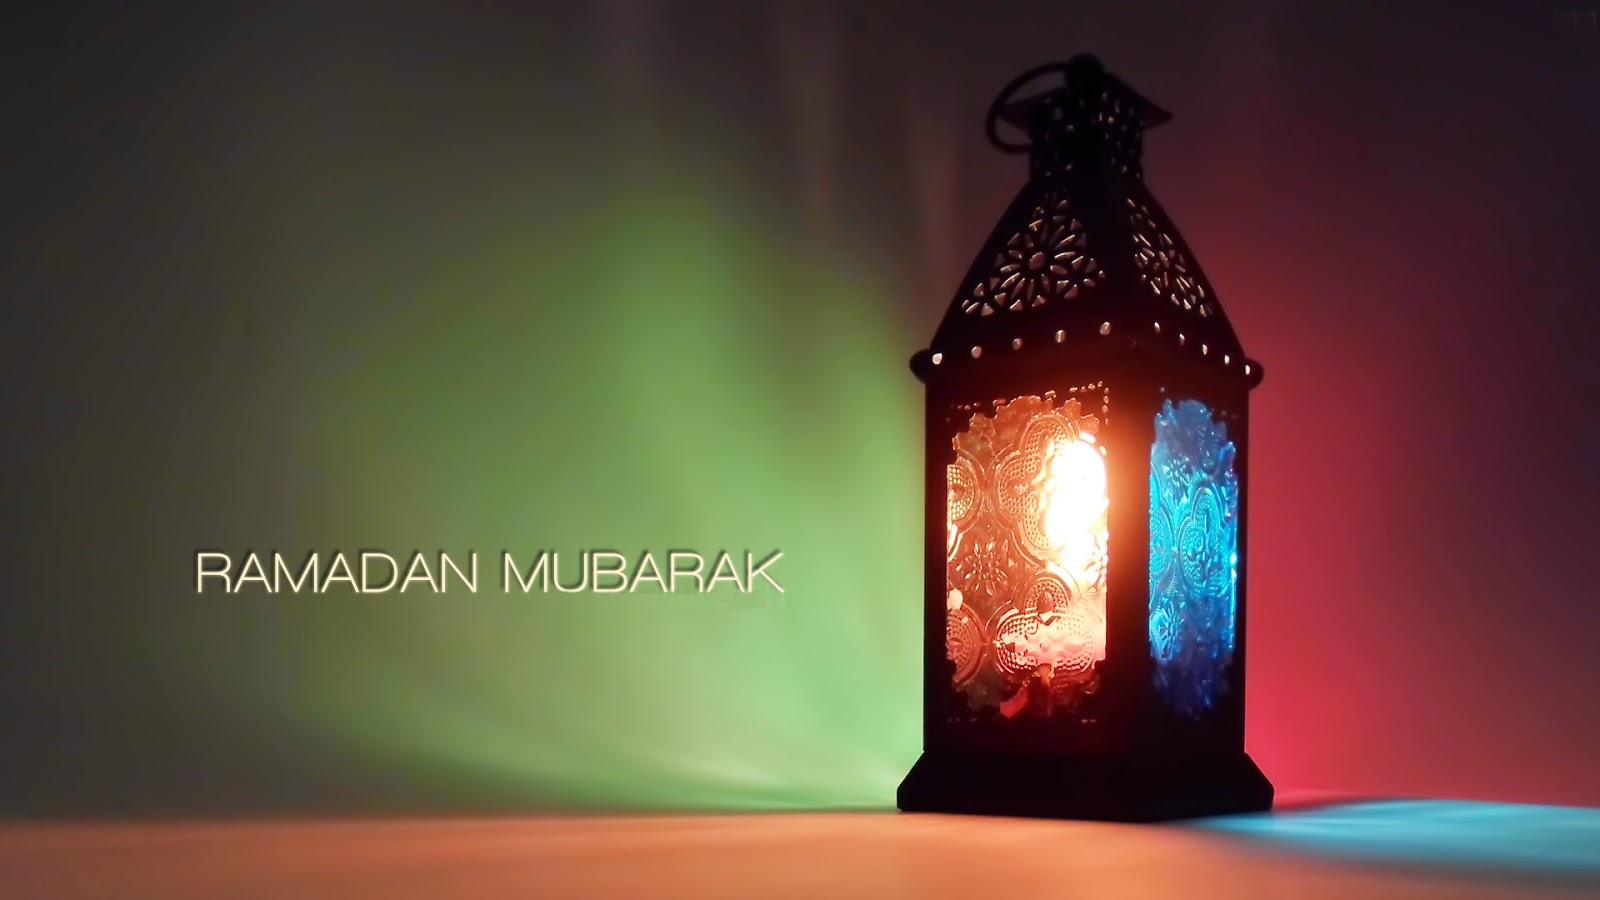 Beautiful Ramadan Mubarak Wallpaper 2015